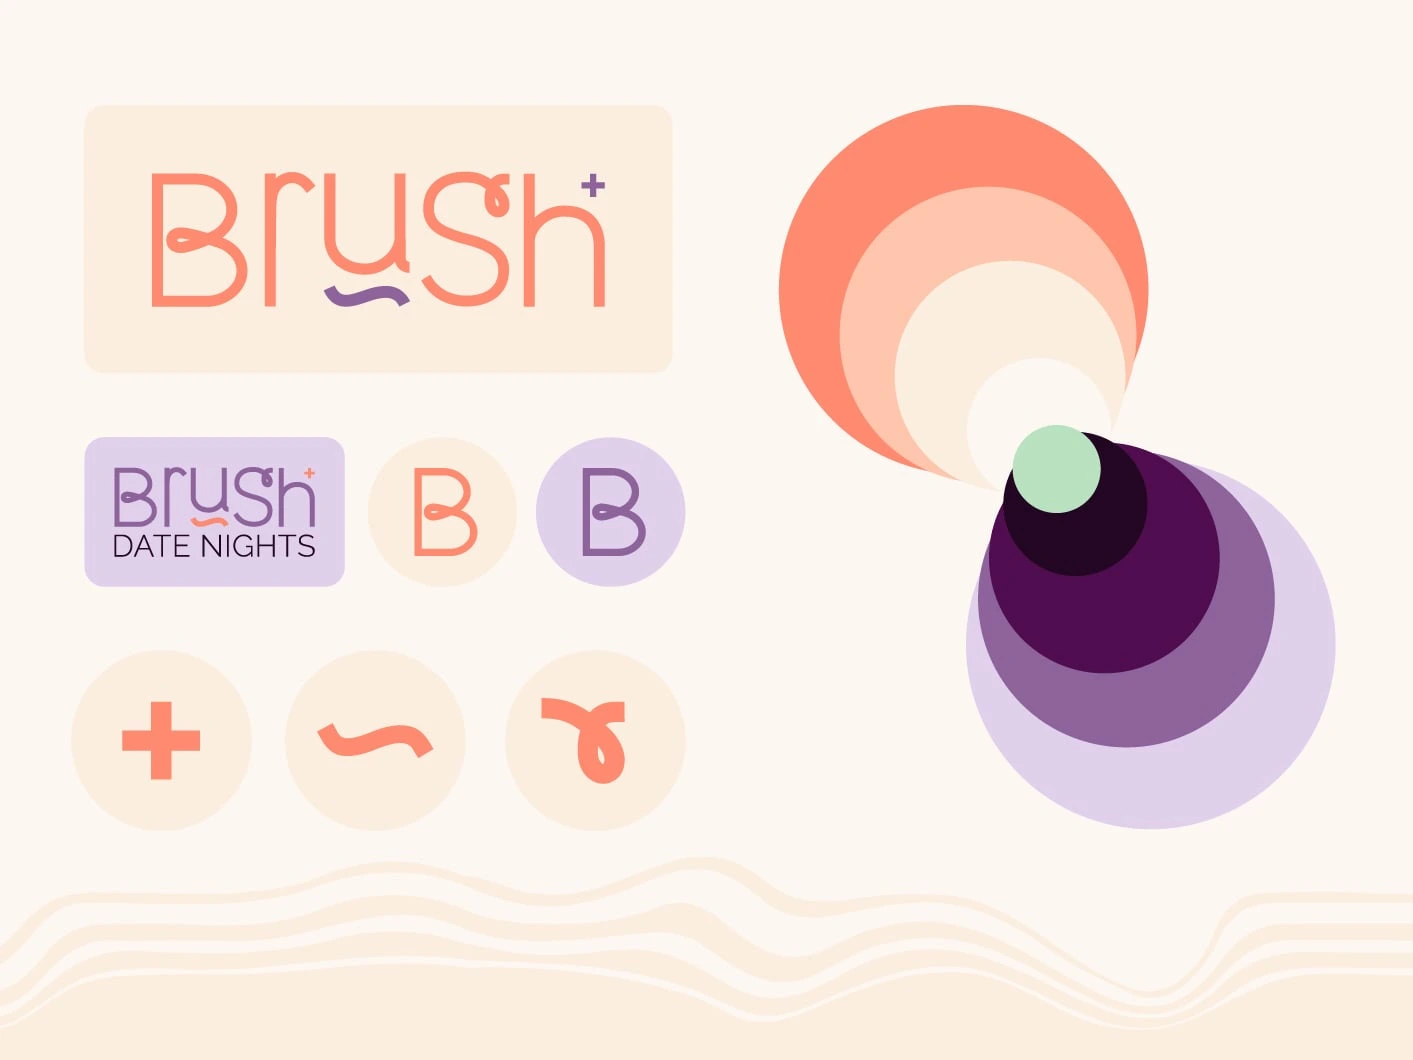 Logo und Bild von Brush, einem Branding Projekt für die Selbstständige Anna Kniaz, das von Komsulting für sie erstellt wurde.